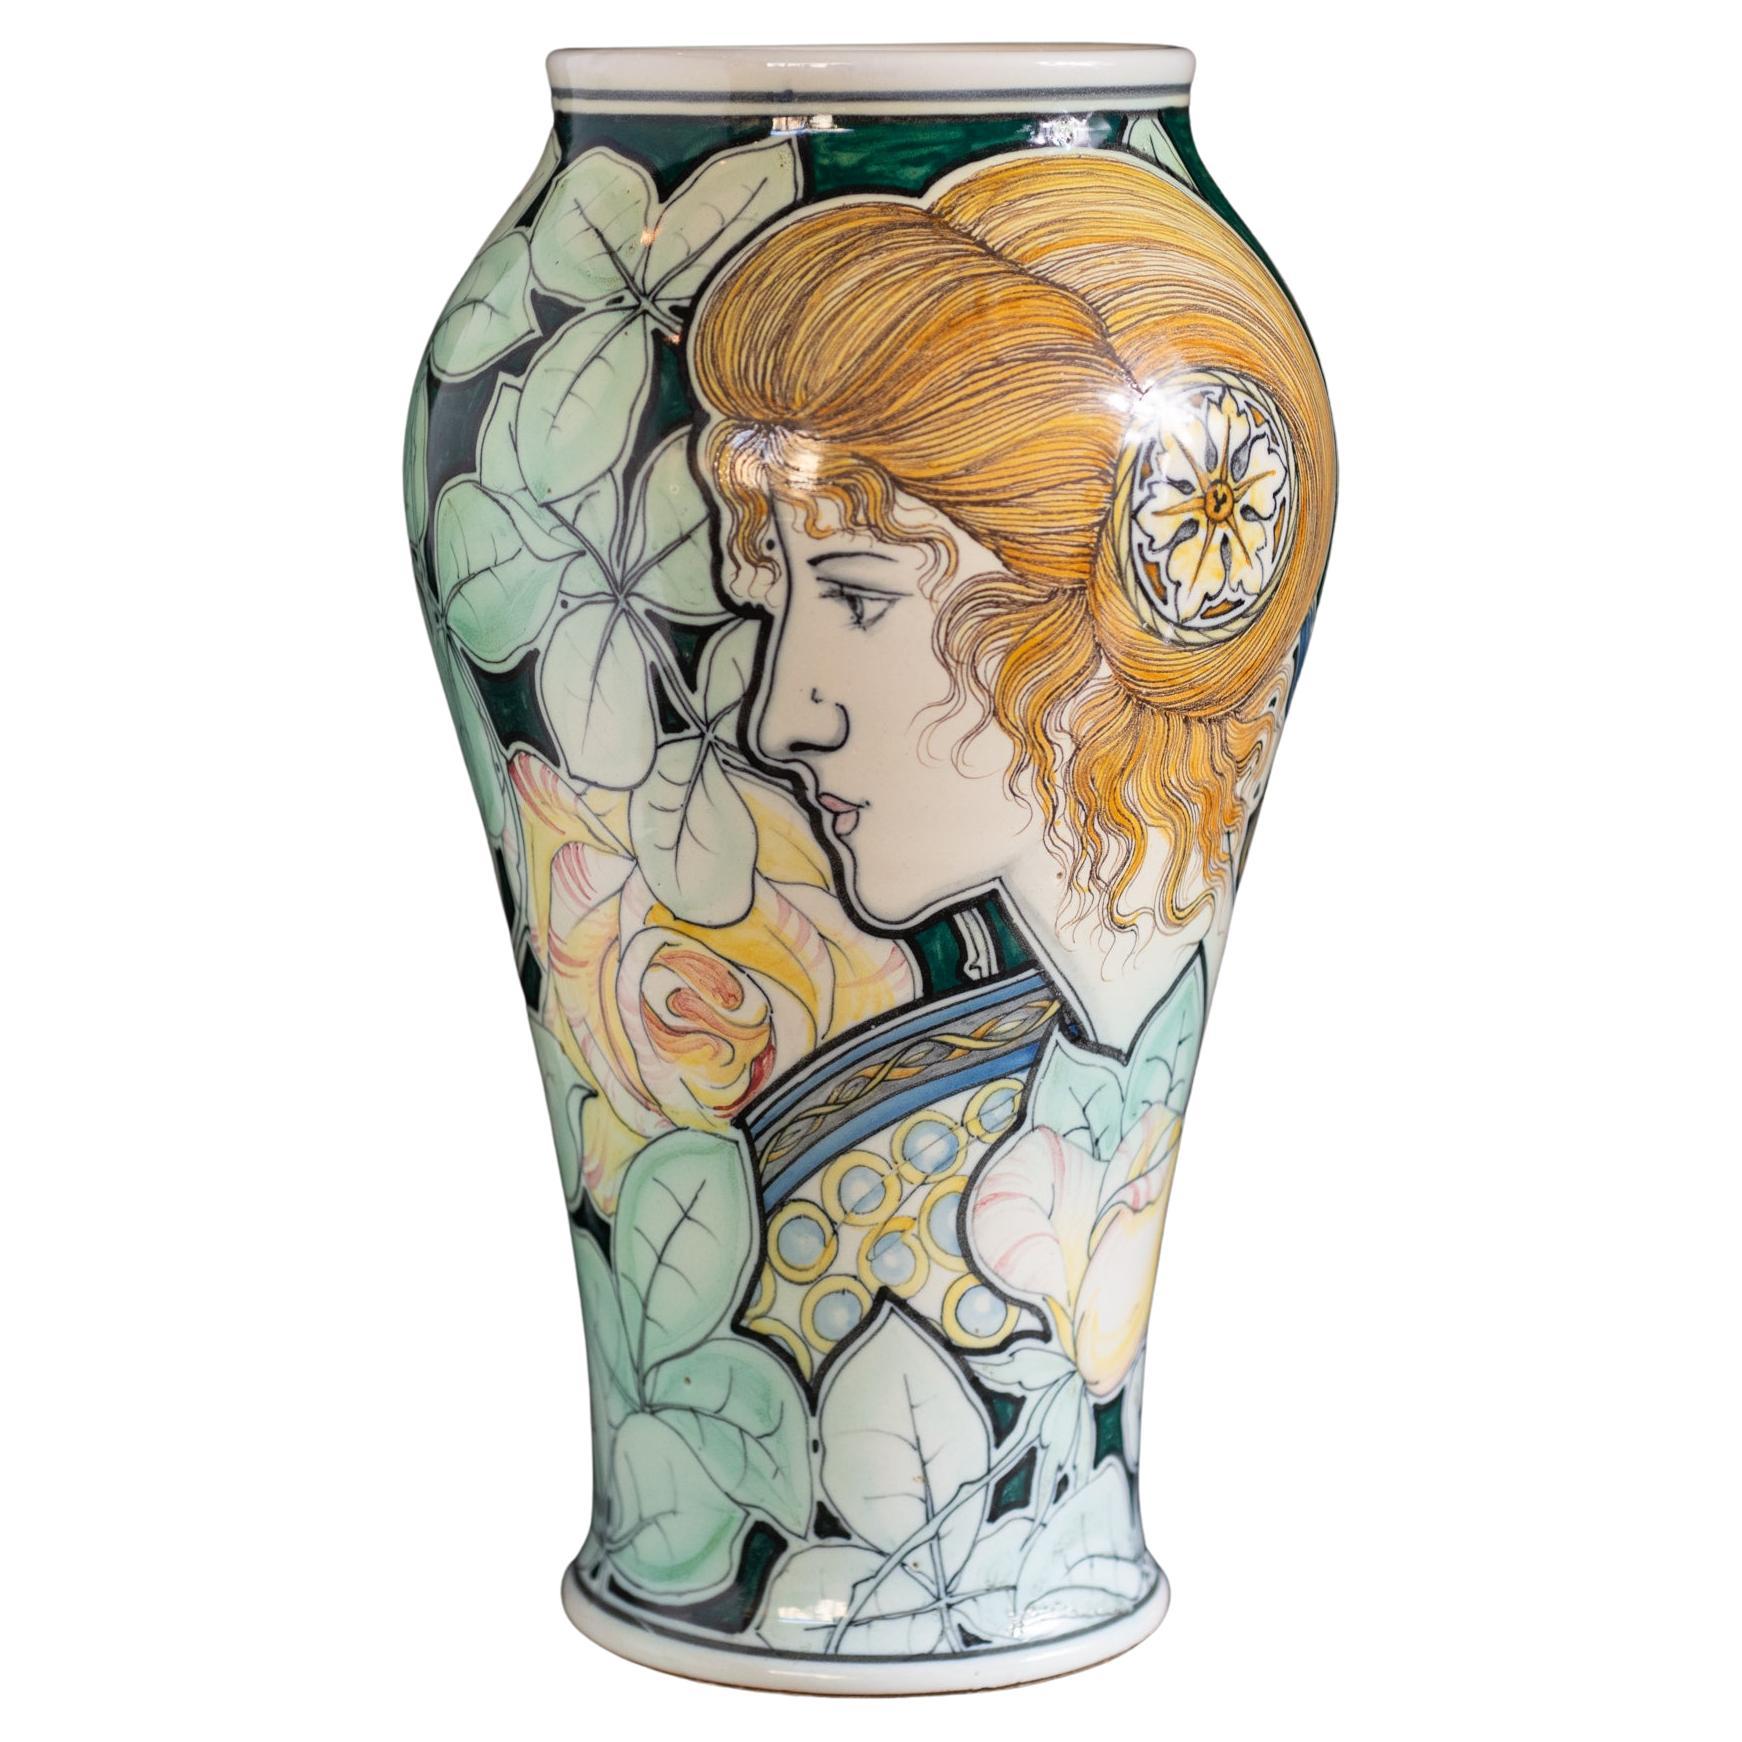 Art Nouveau Stile Liberty Portrait Vase by Galileo Chini For Sale